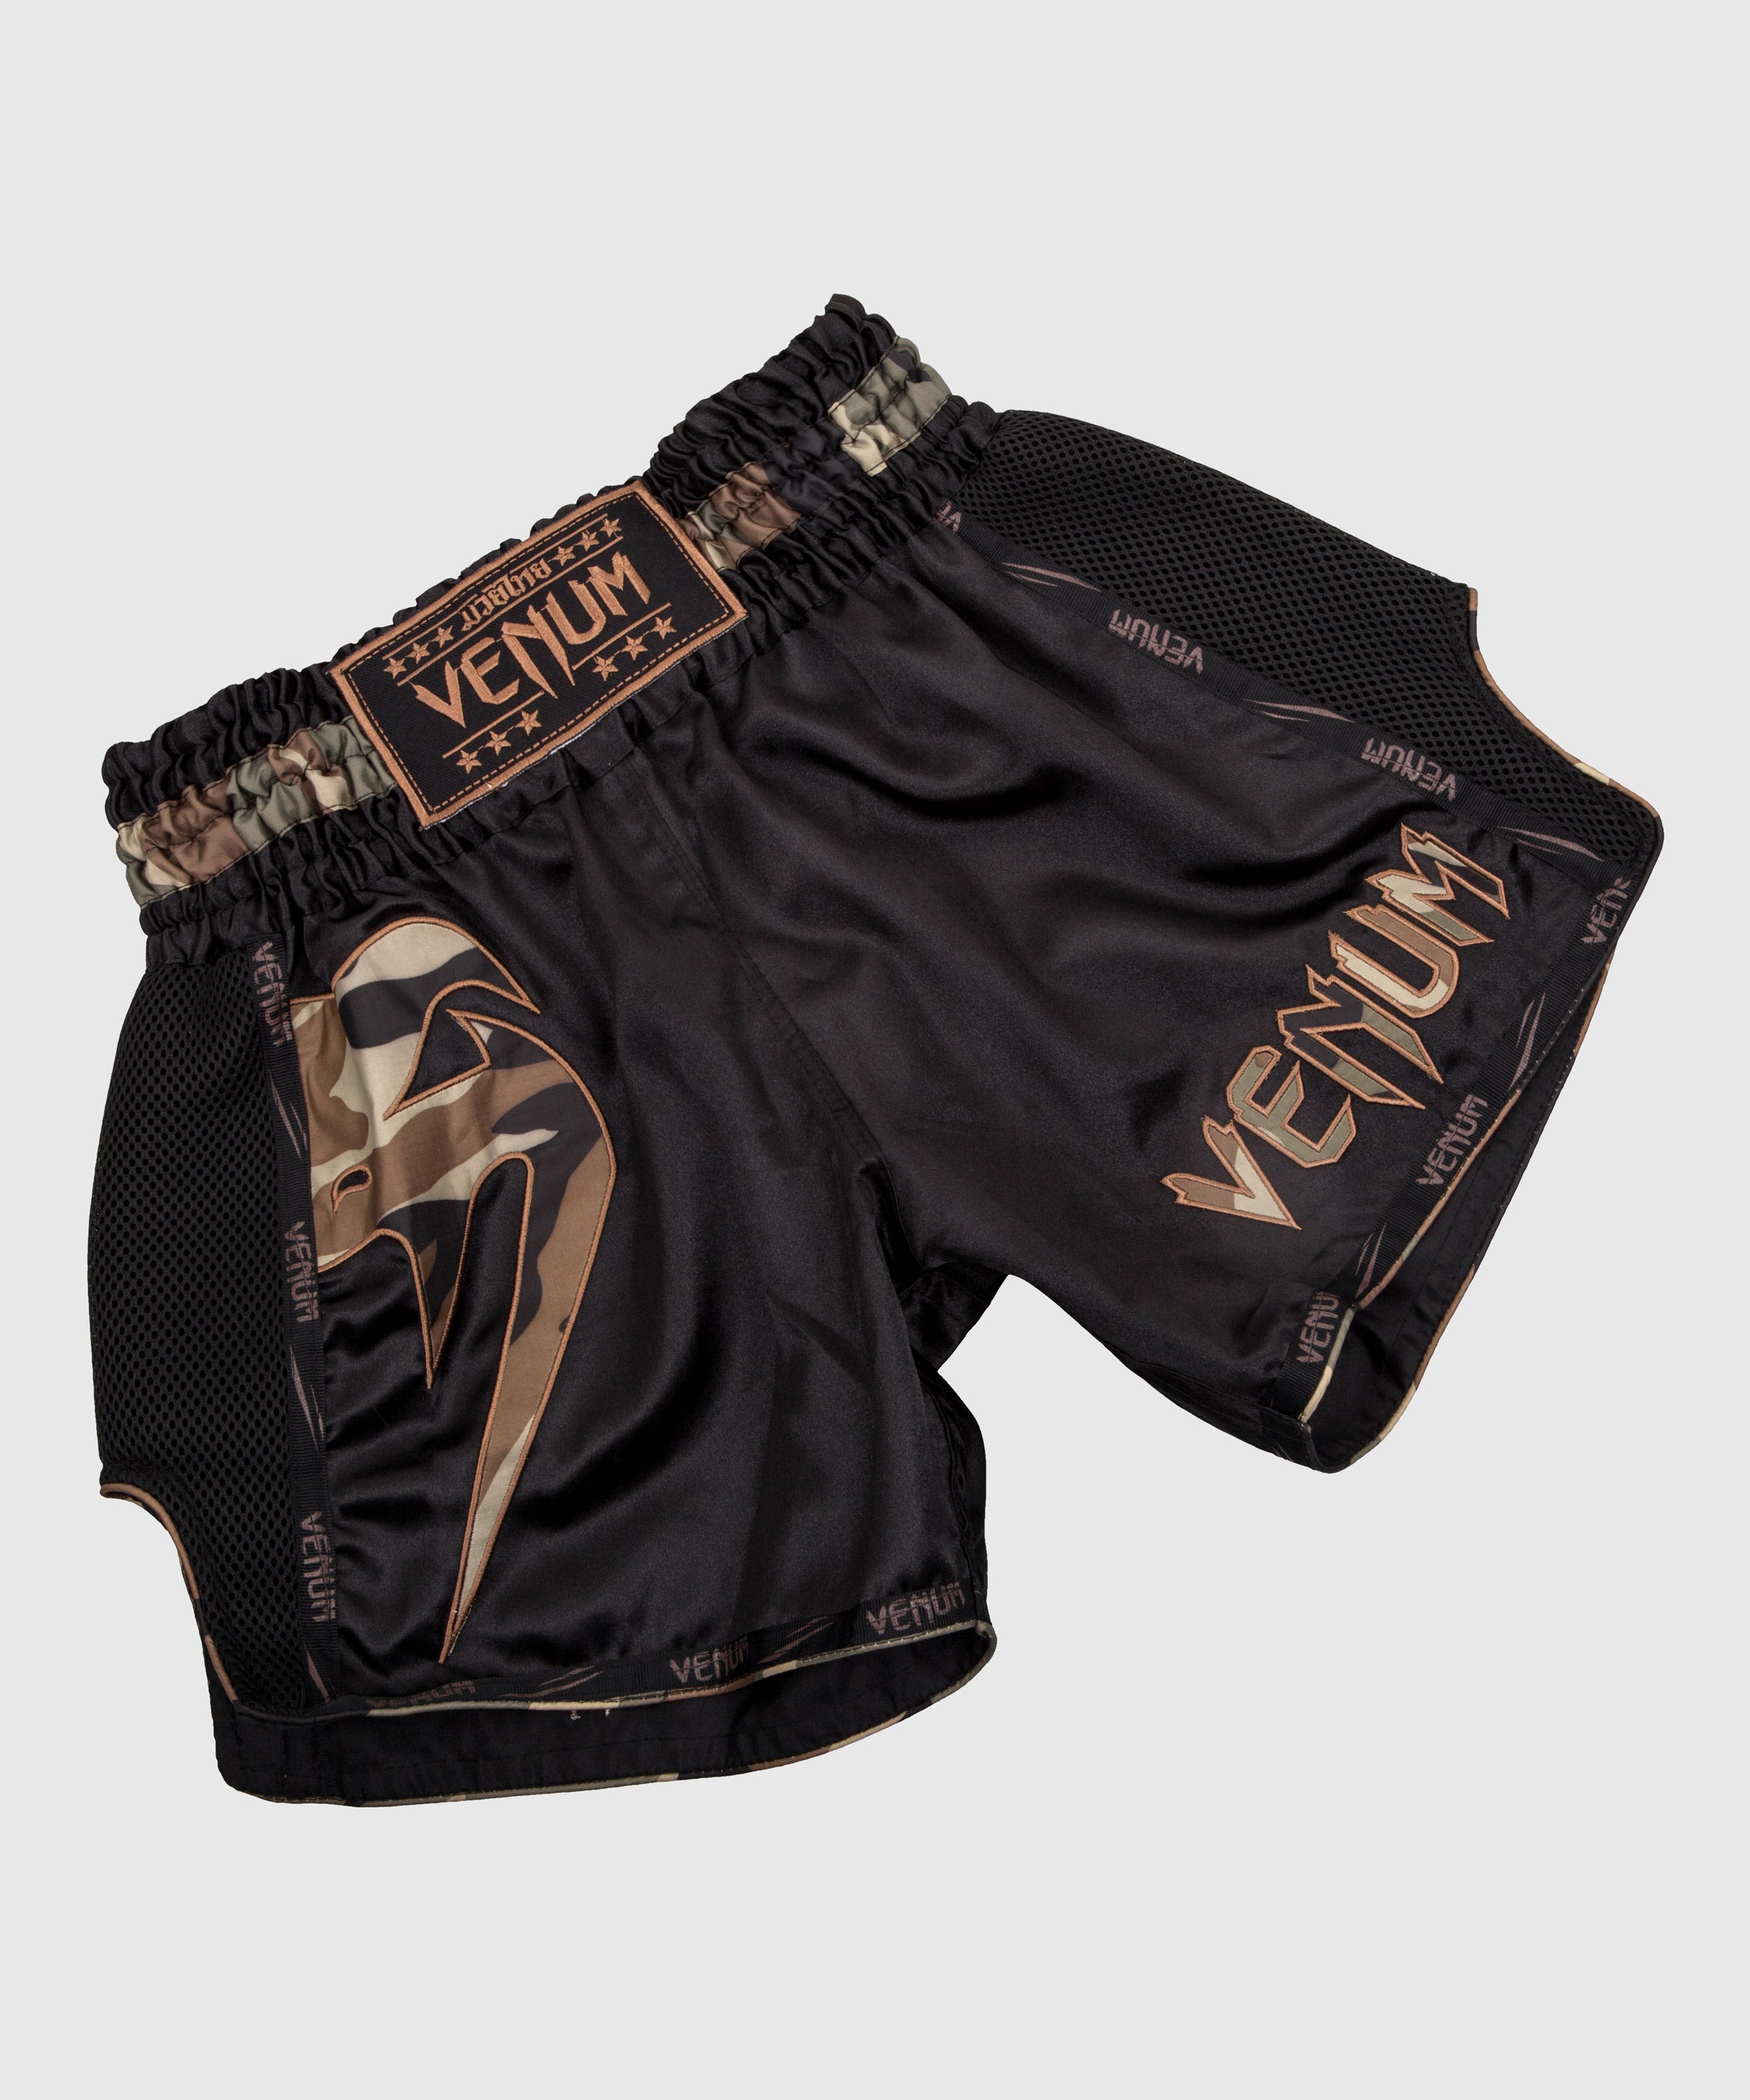 Pantalones cortos de Muay Thai – Venum España